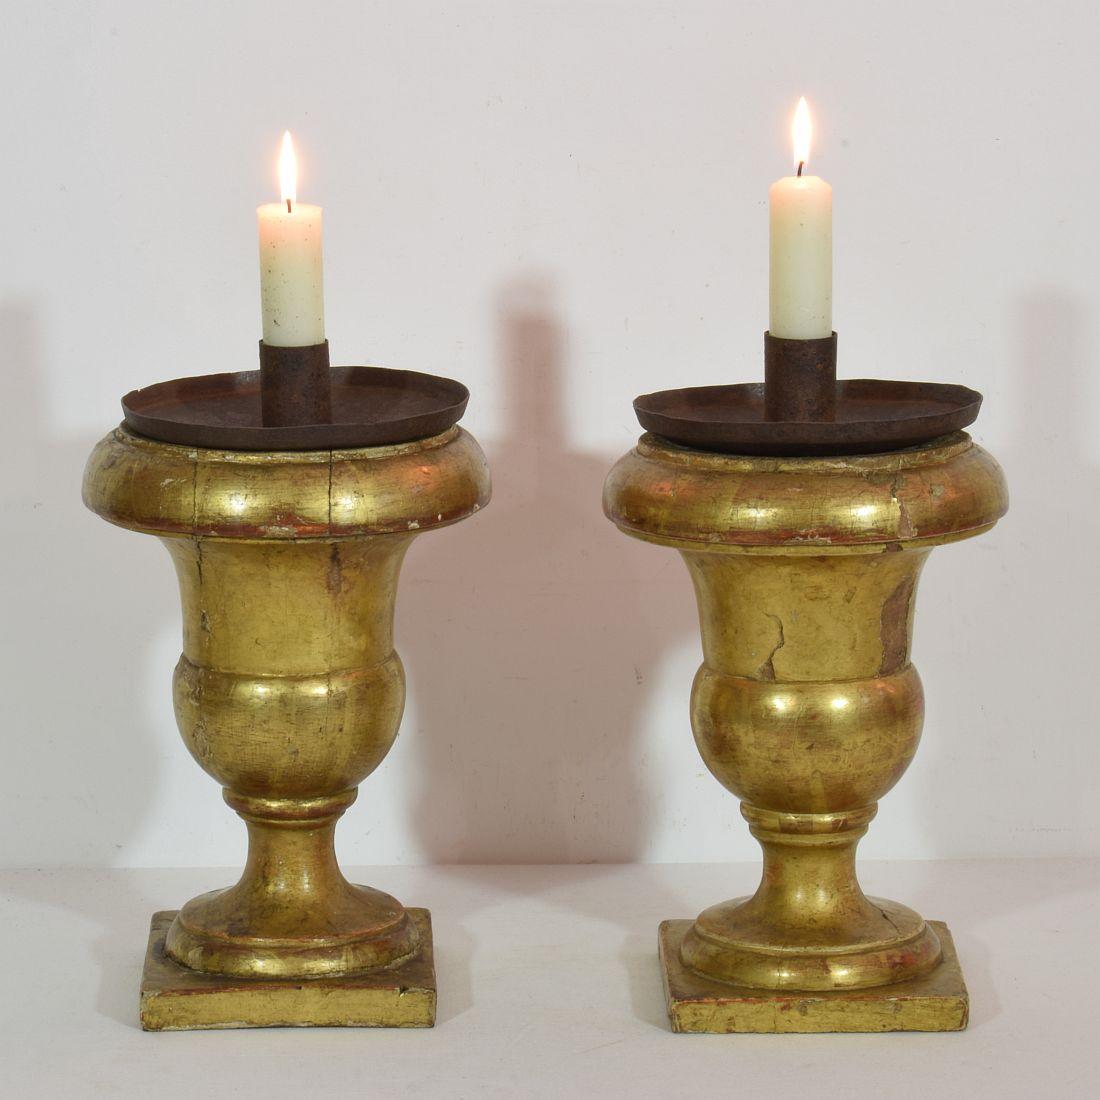 Magnifiques chandeliers en bois doré, Italie, vers 1850.
Vieillissement, petites pertes et réparations anciennes.